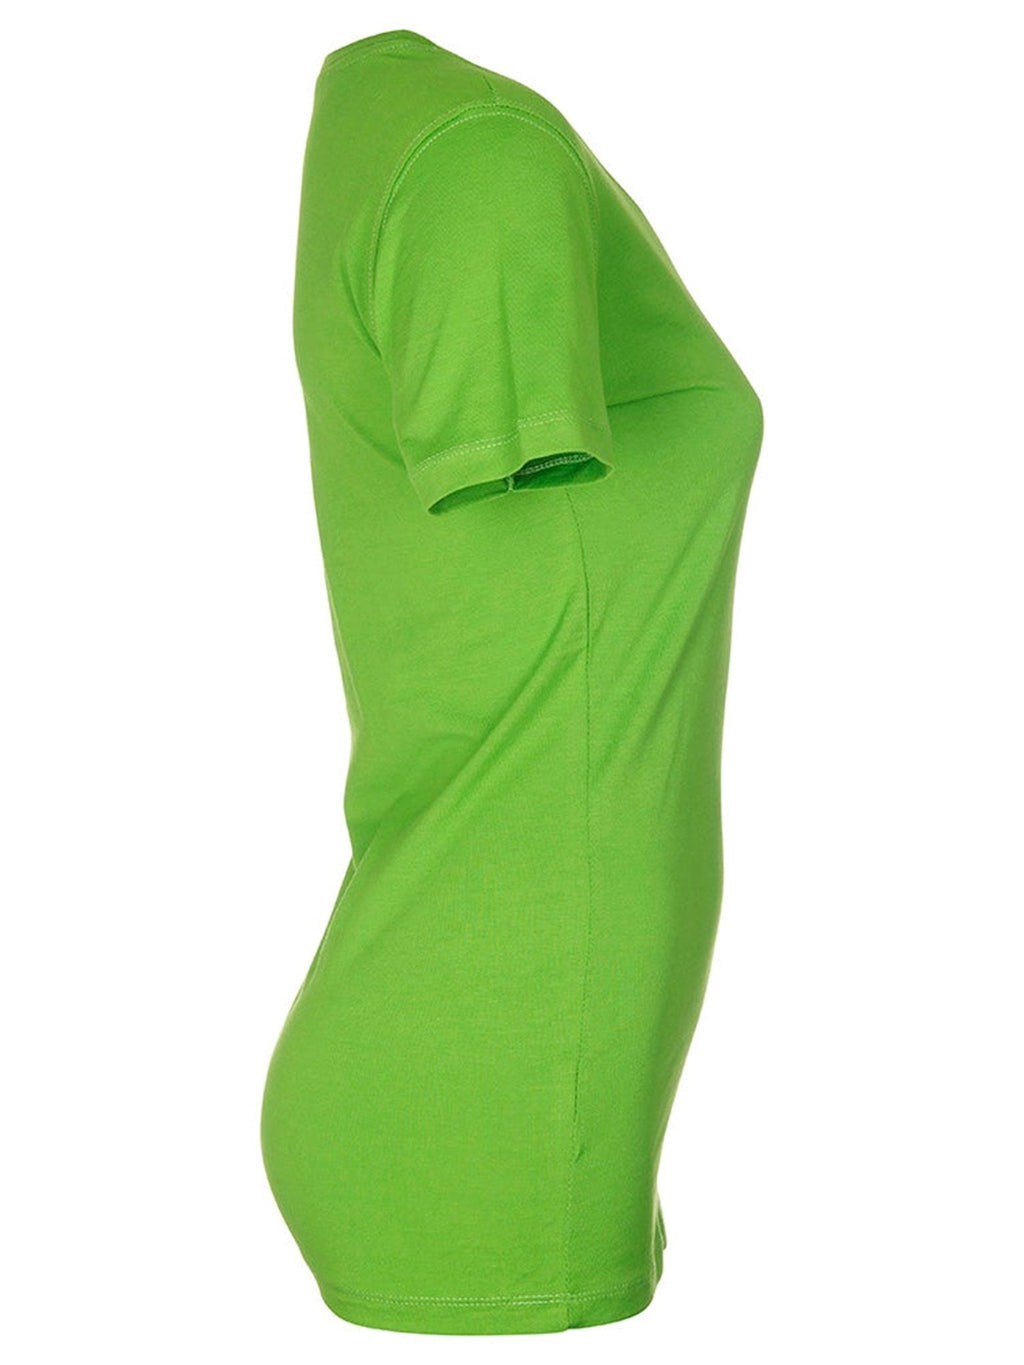 Τοποθετημένο μπλουζάκι - πράσινο ασβέστη